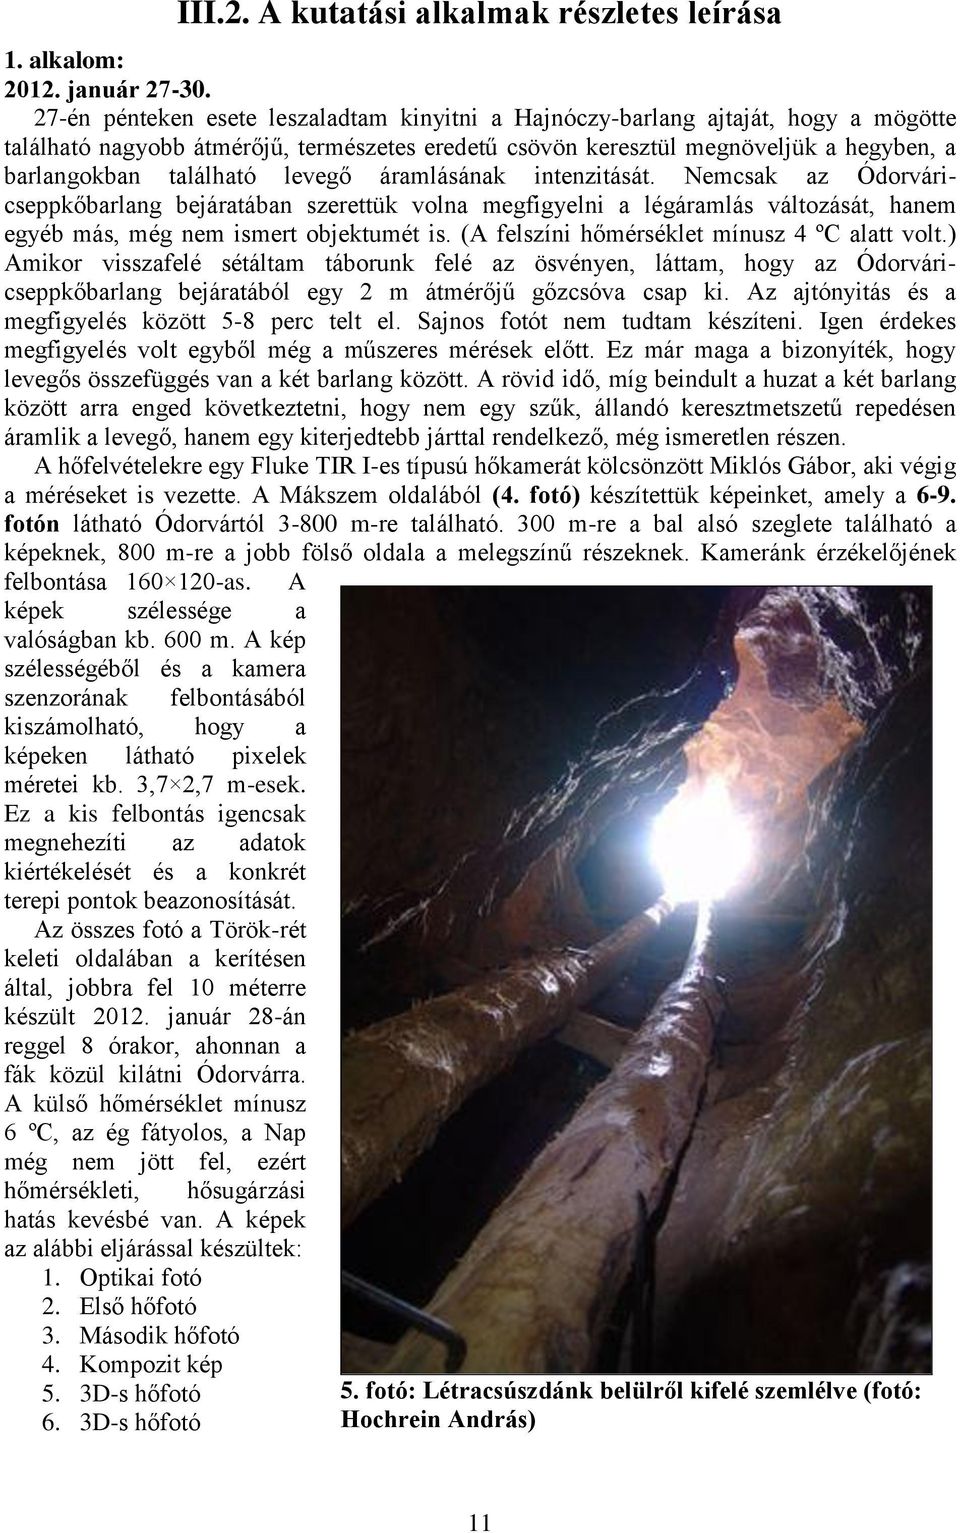 levegő áramlásának intenzitását. Nemcsak az Ódorváricseppkőbarlang bejáratában szerettük volna megfigyelni a légáramlás változását, hanem egyéb más, még nem ismert objektumét is.